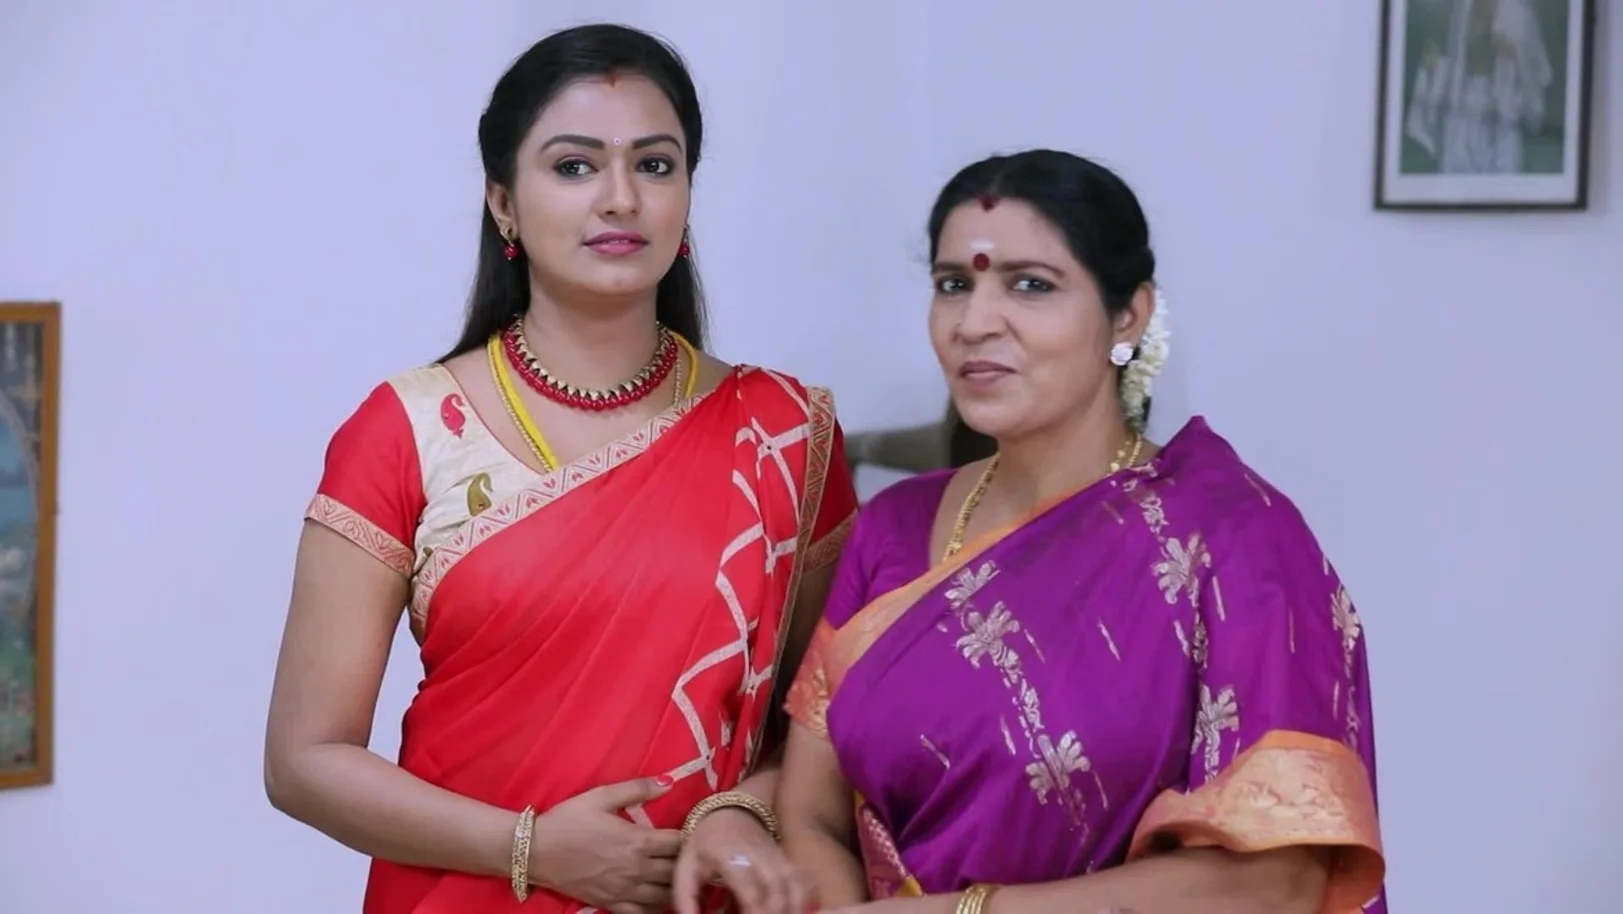 Oru Oorula Oru Rajakumari (Tamil) - September 17, 2018 - Webisode - Zee Tamil 17th September 2018 Webisode